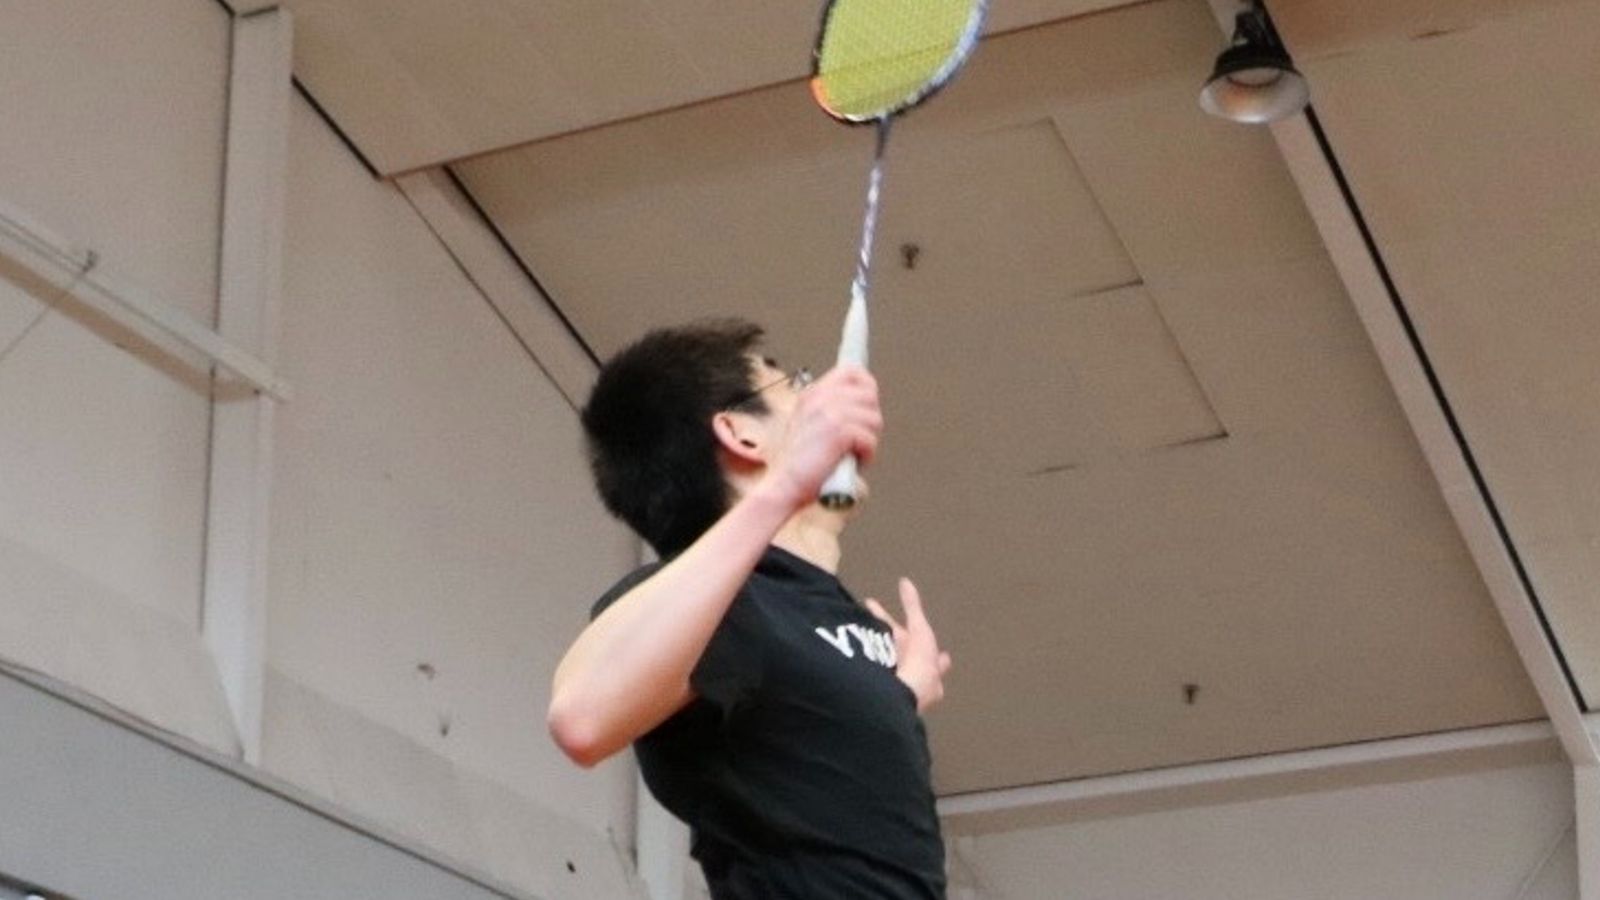 Yaowen Zheng playing badminton